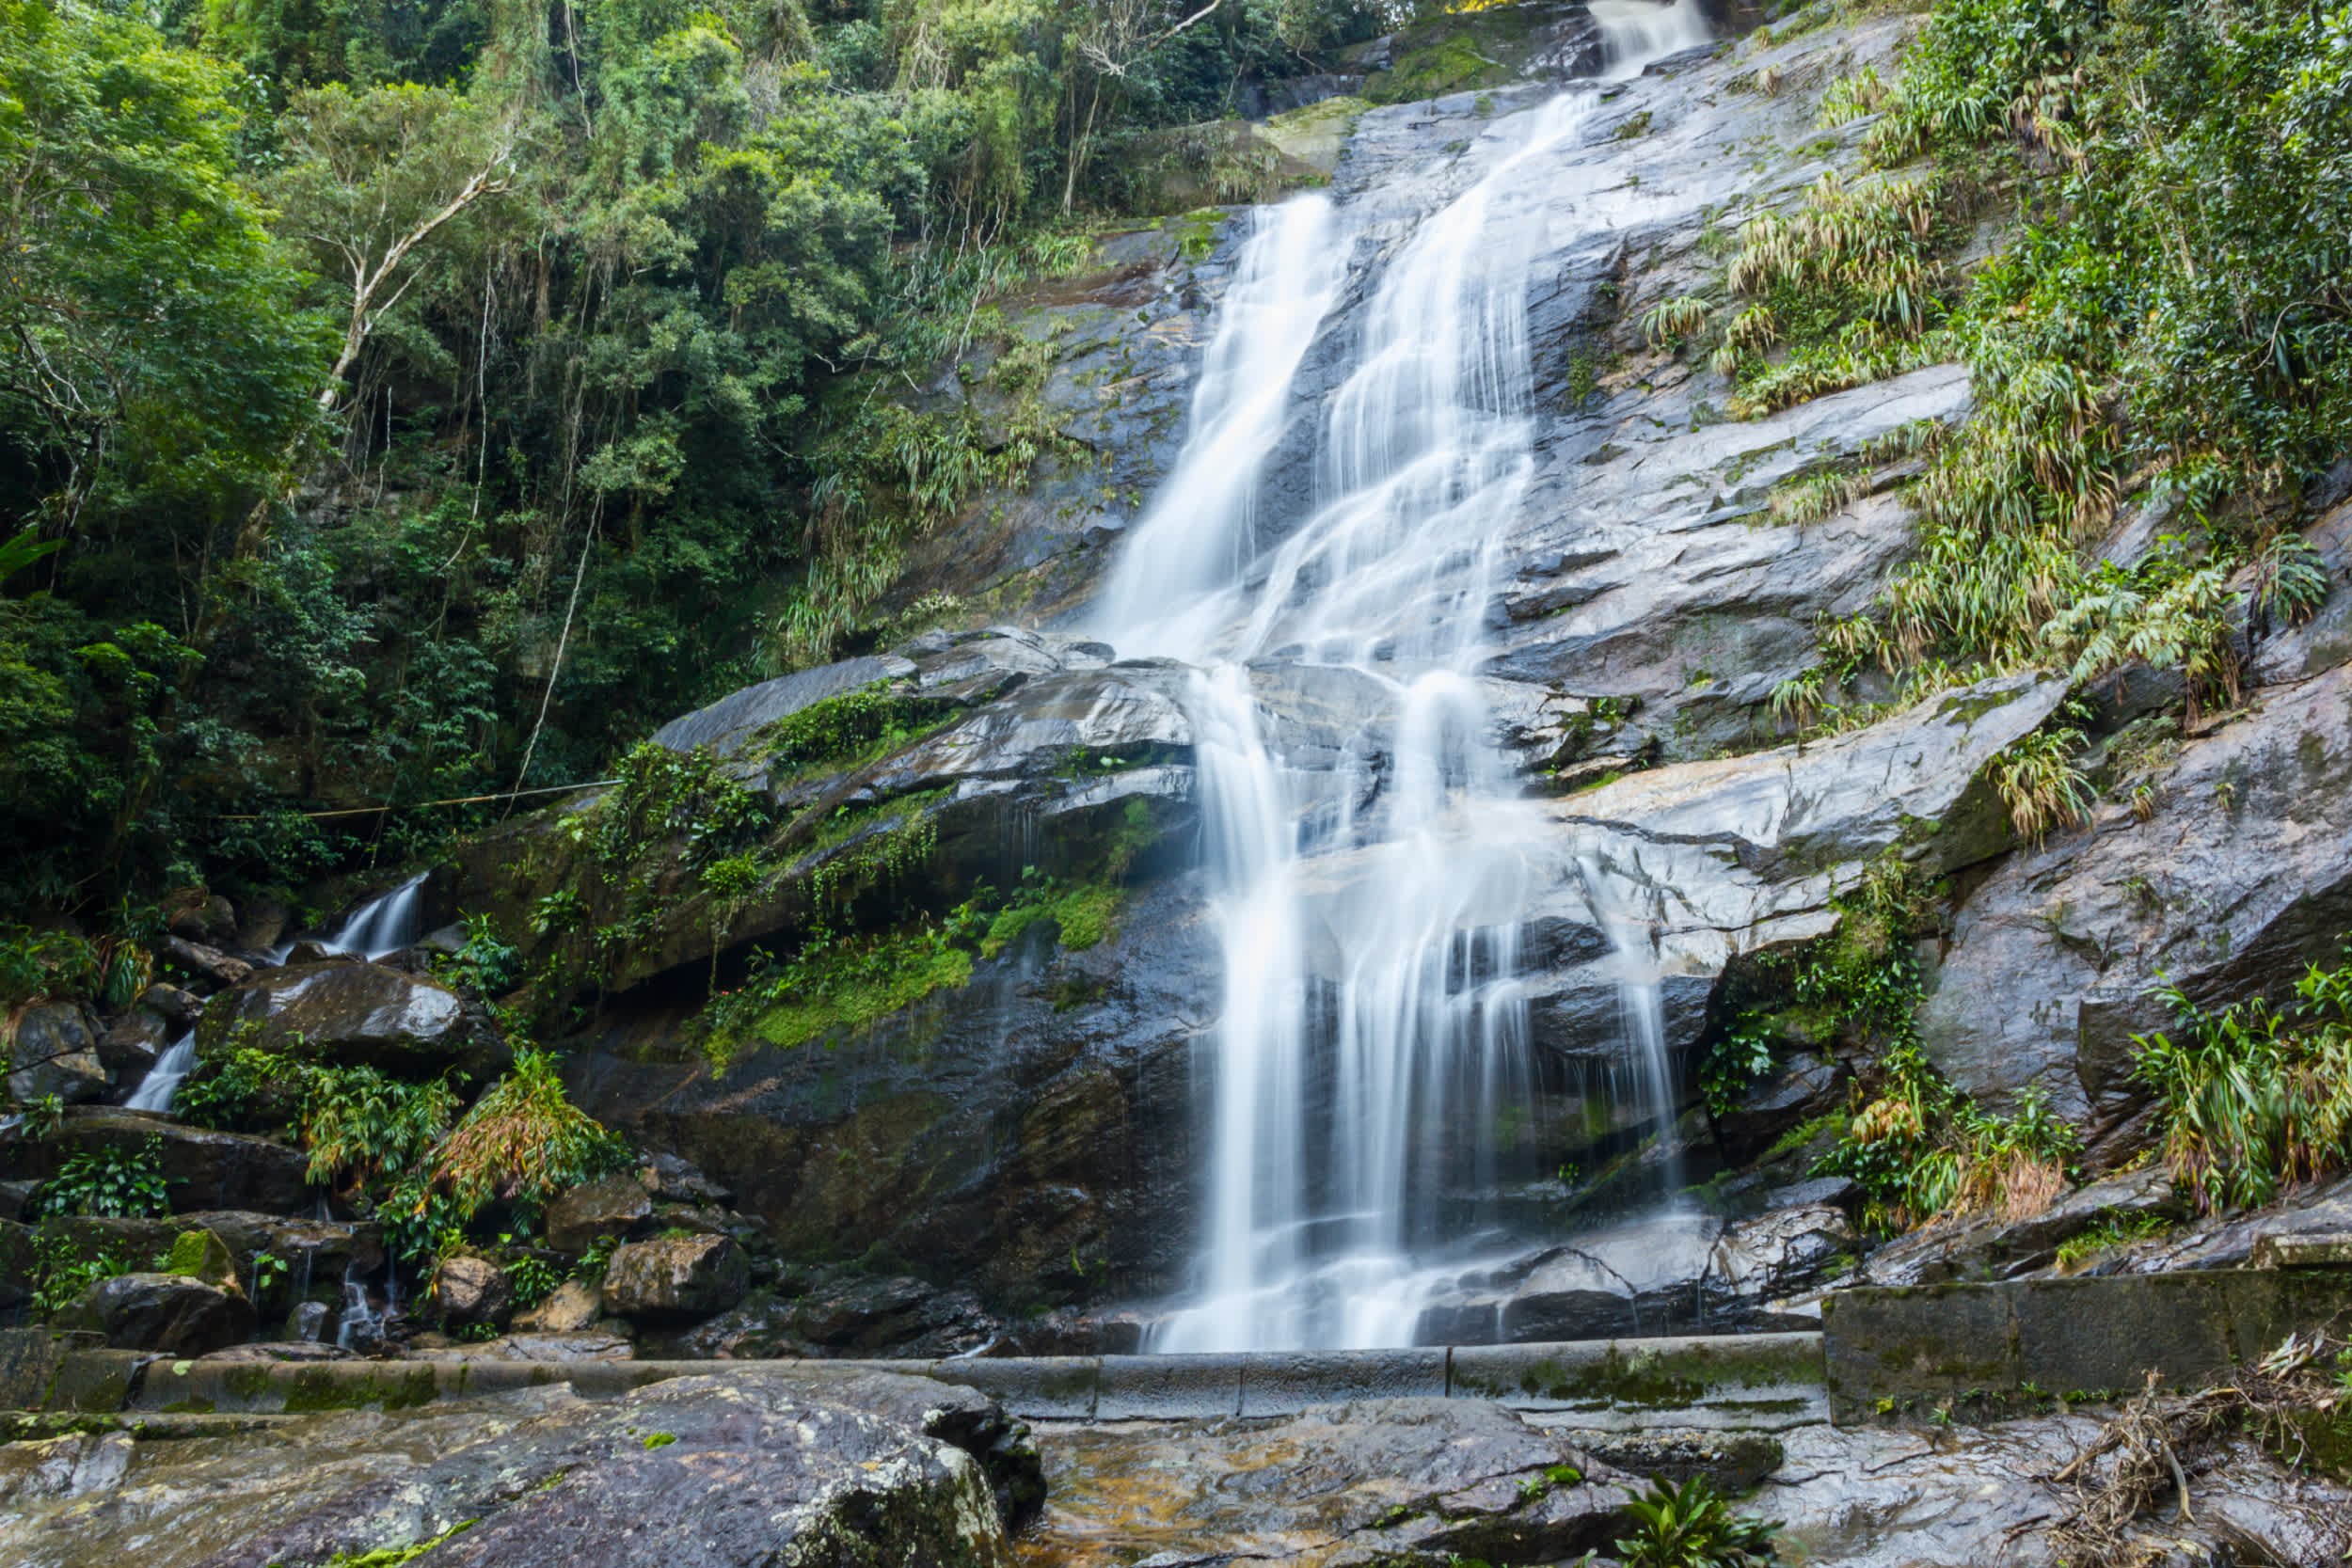 Bezoek het Tijuca National Park nabij Rio de Janeiro gedurende uw rondreis door Brazilië.